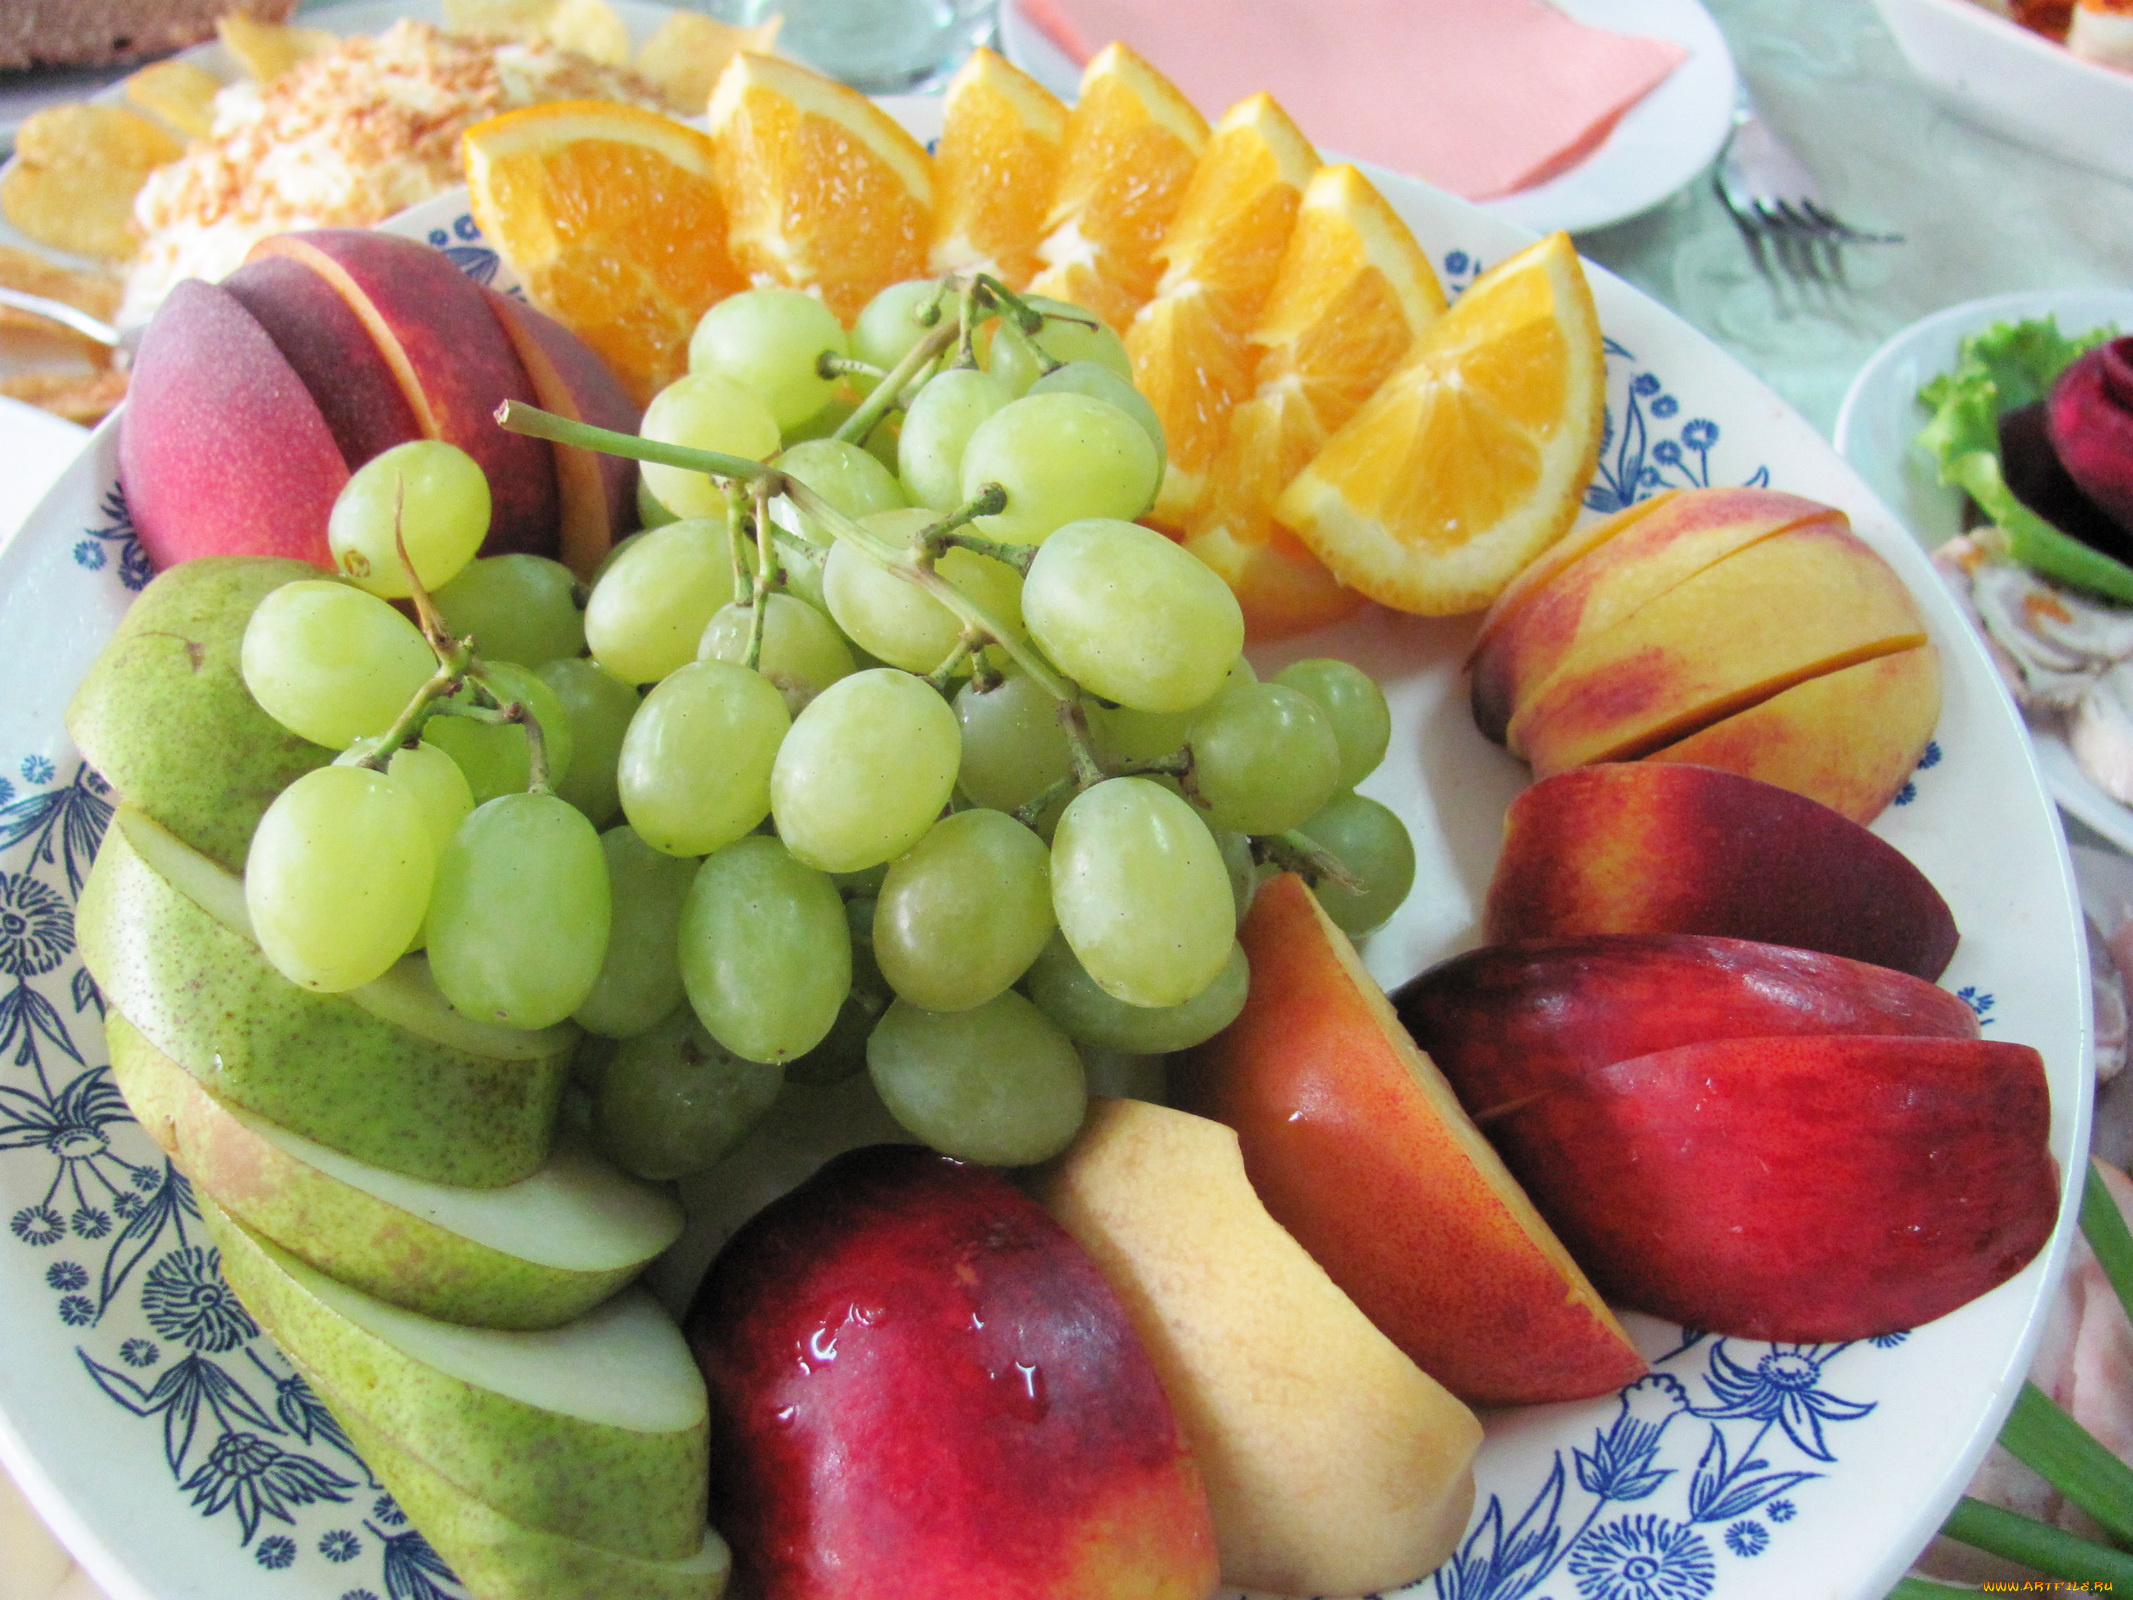 еда, фрукты, ягоды, апельсины, груши, яблоки, виноград